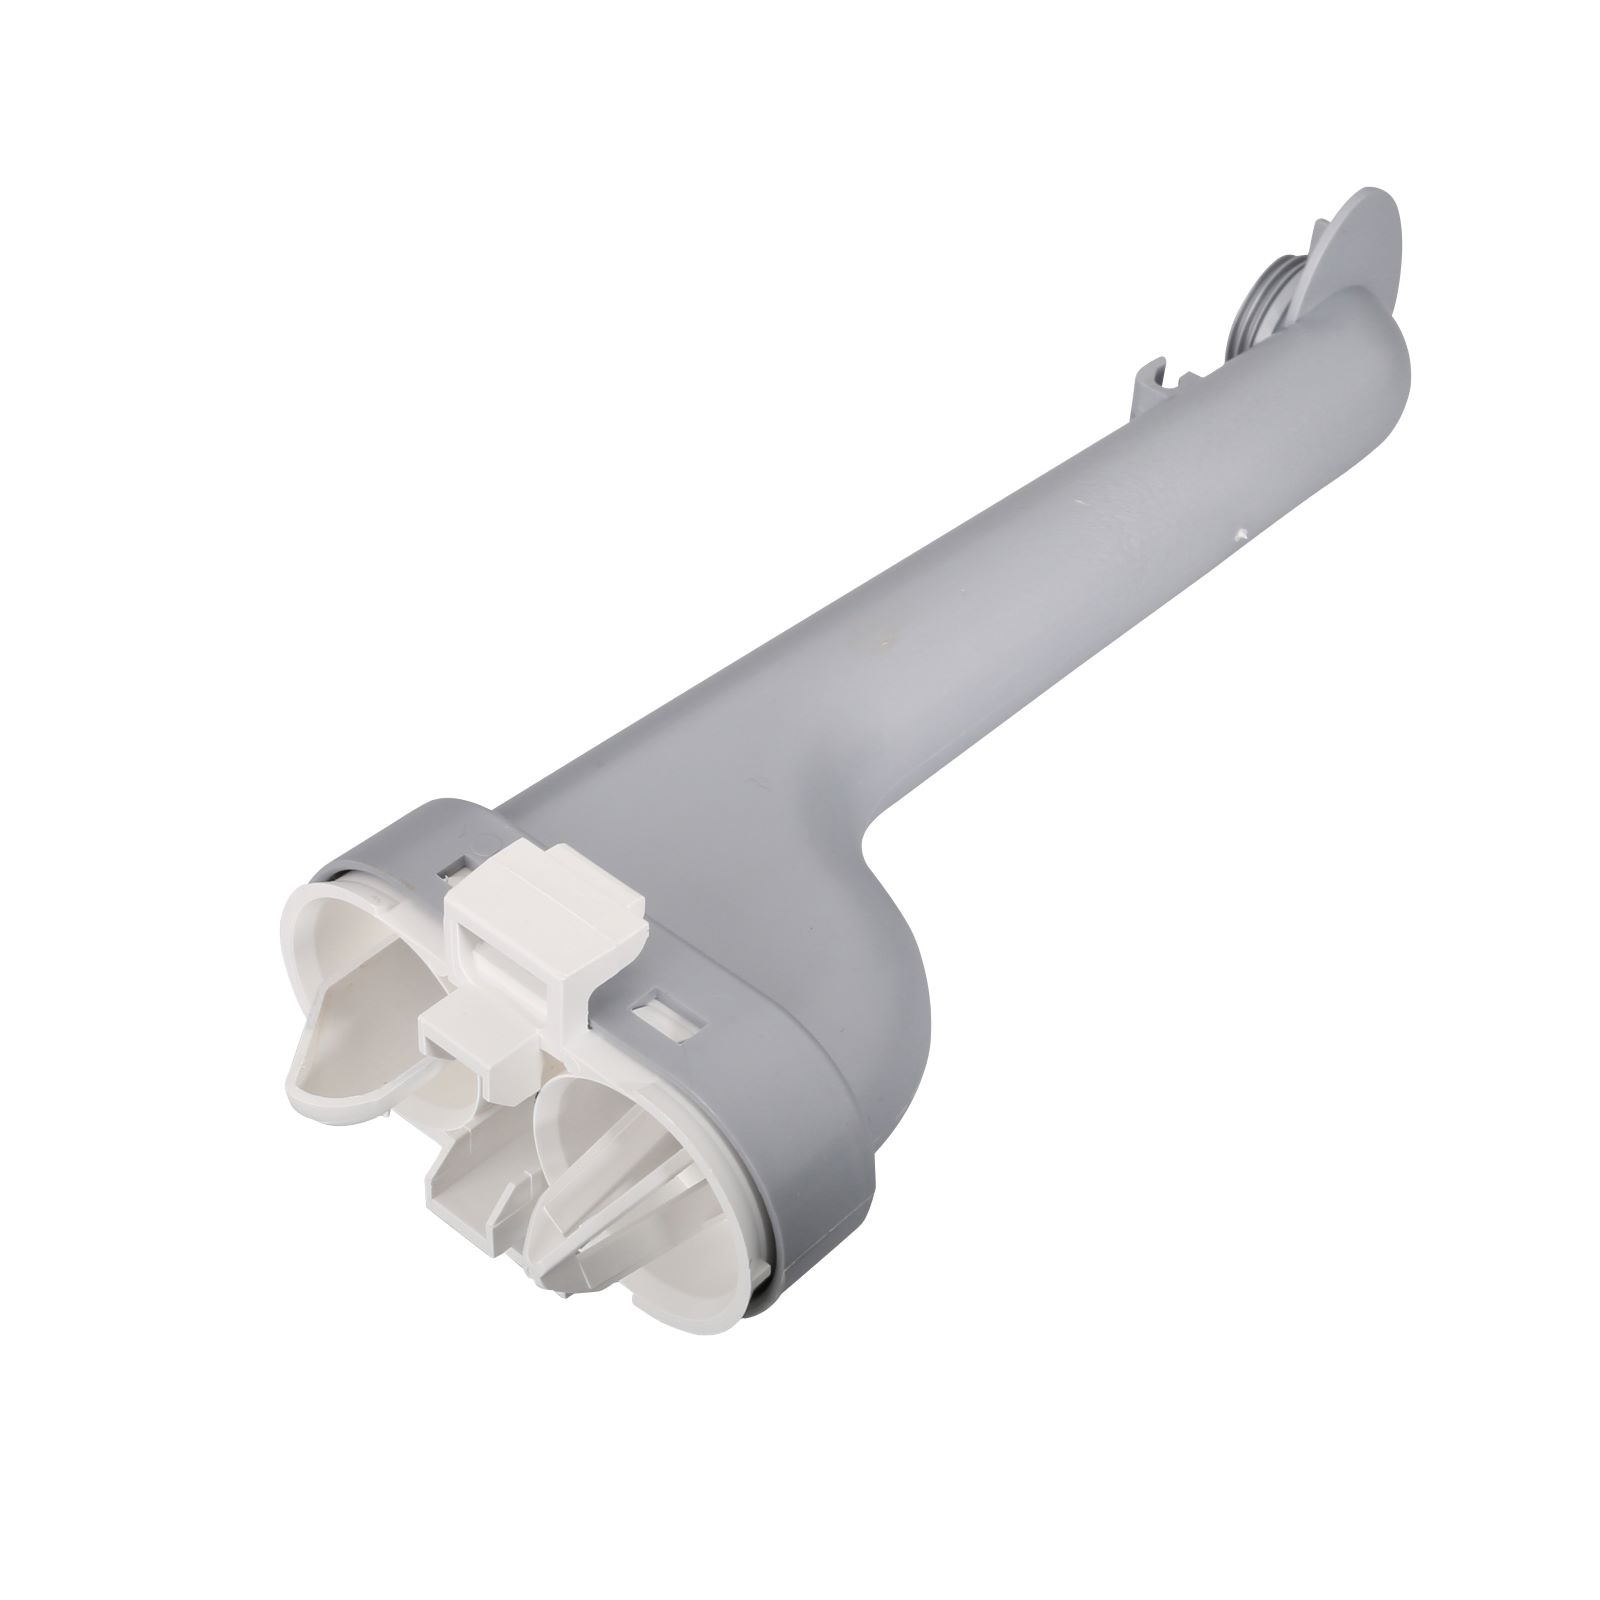 AEG Dishwasher Spray Arm Channel 1524902523